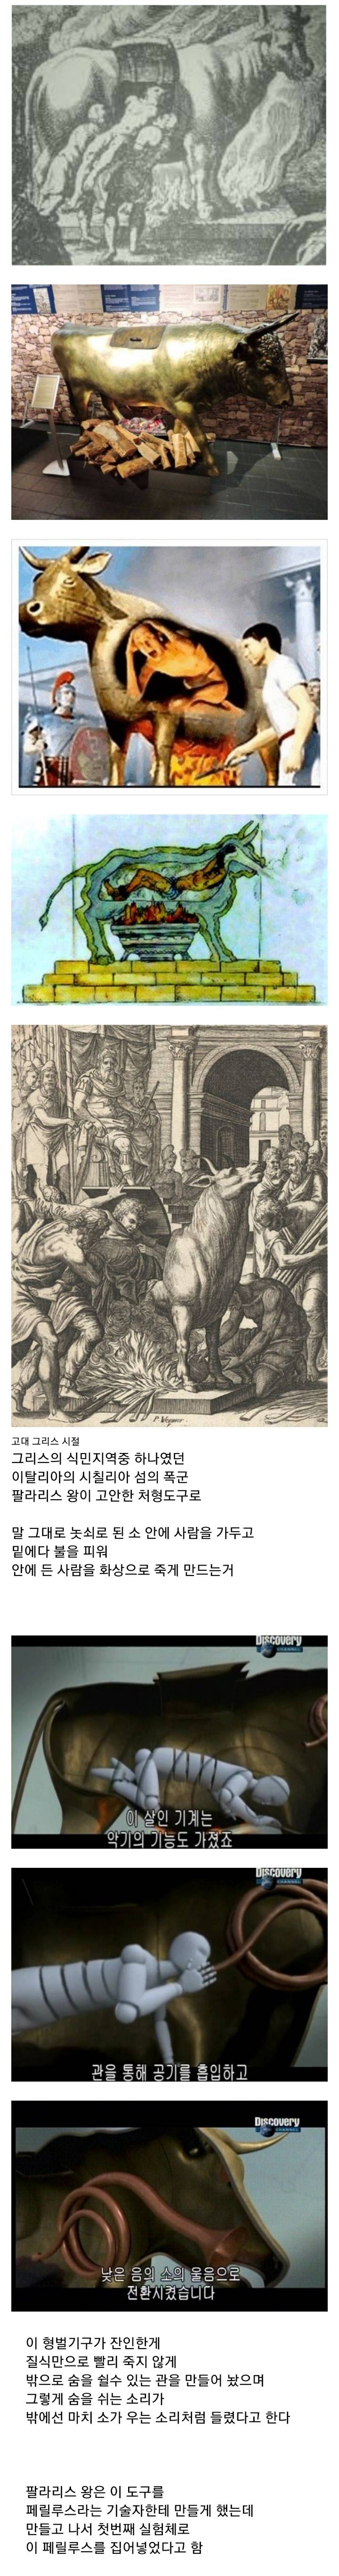 [역사] 사람을 놋쇠 소 안에 넣어 구워죽이는 팔라리스의 황소 형벌.jpg | 인스티즈